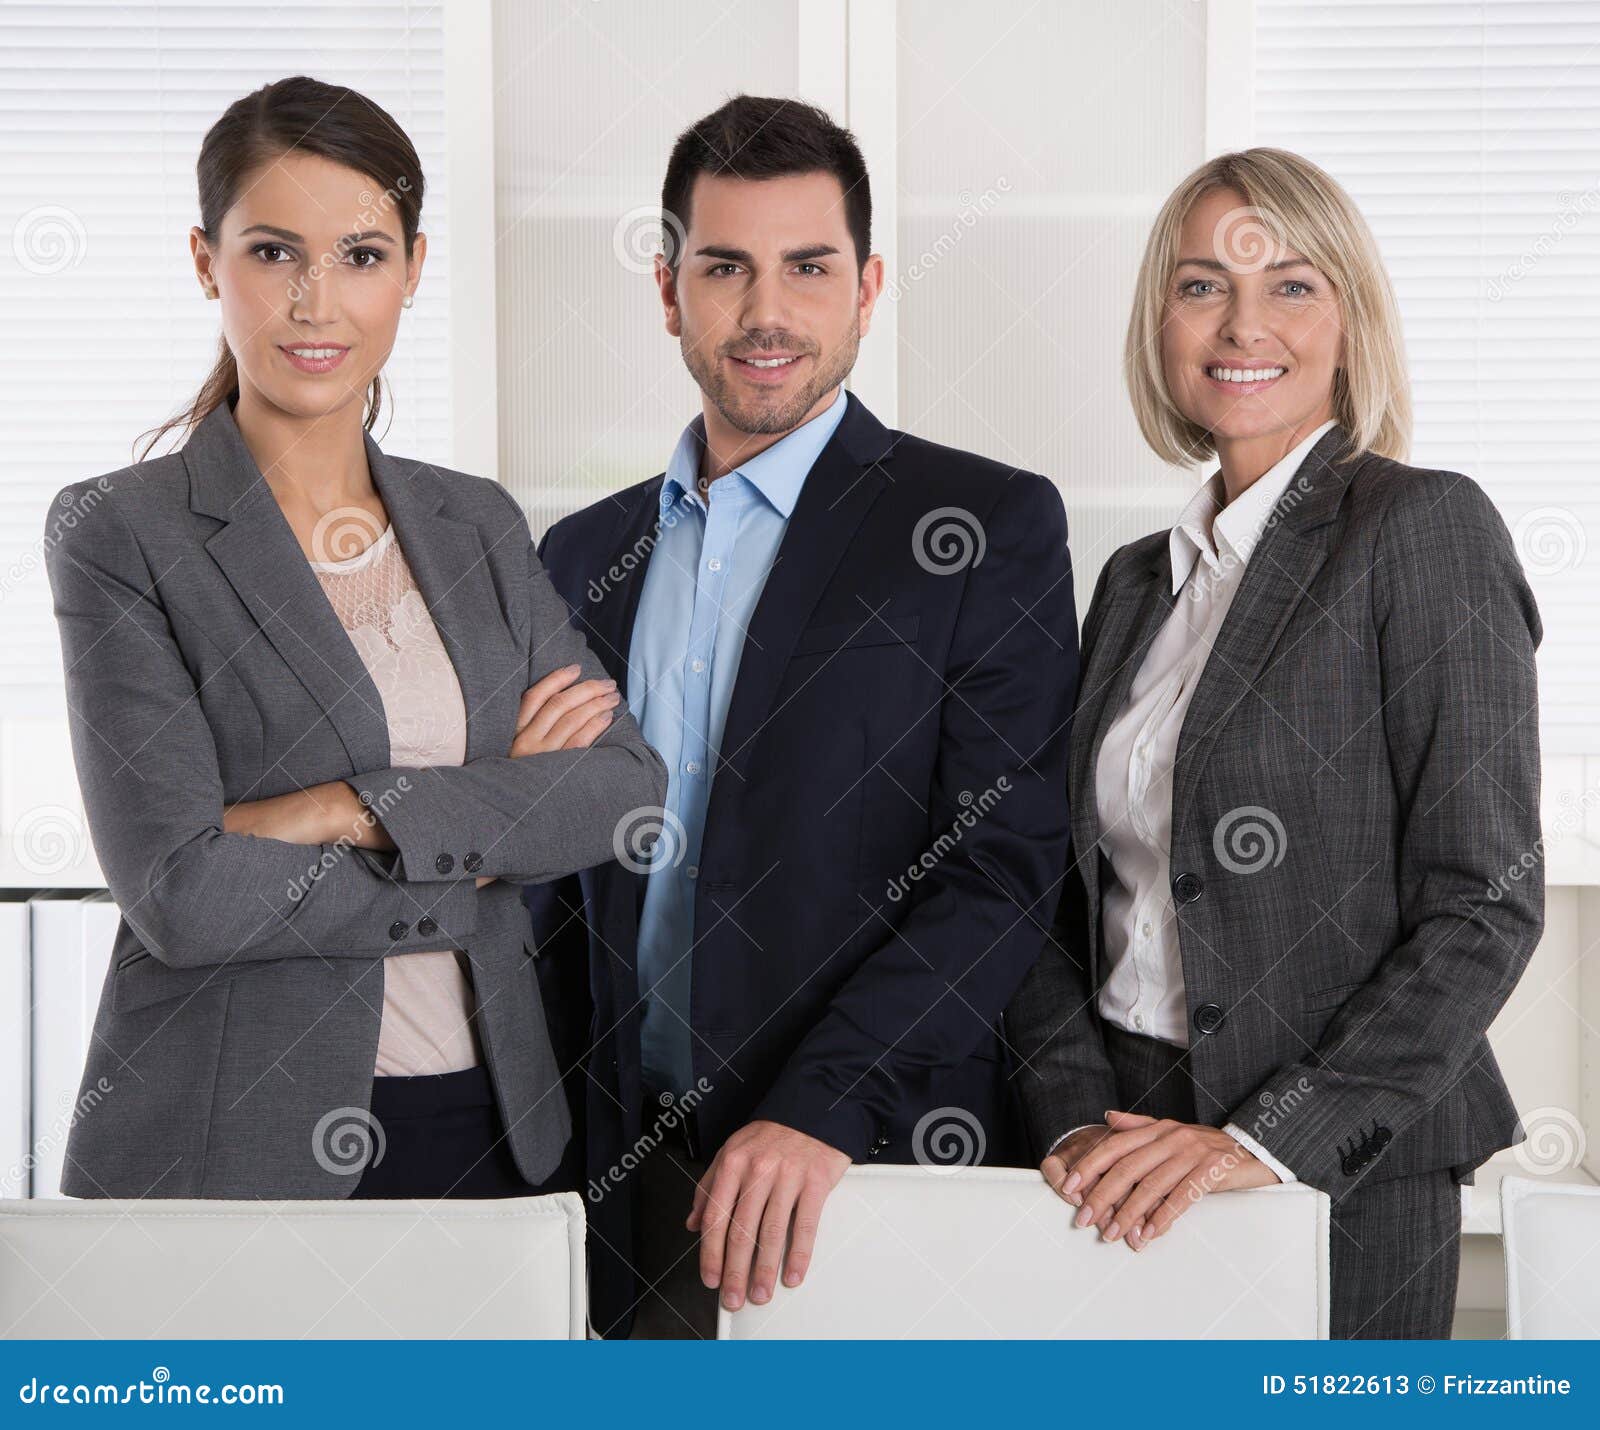 Retrato De Três Executivos: Homem E Mulher Em Uma Equipe Imagem de Stock -  Imagem de vendas, junto: 51822613